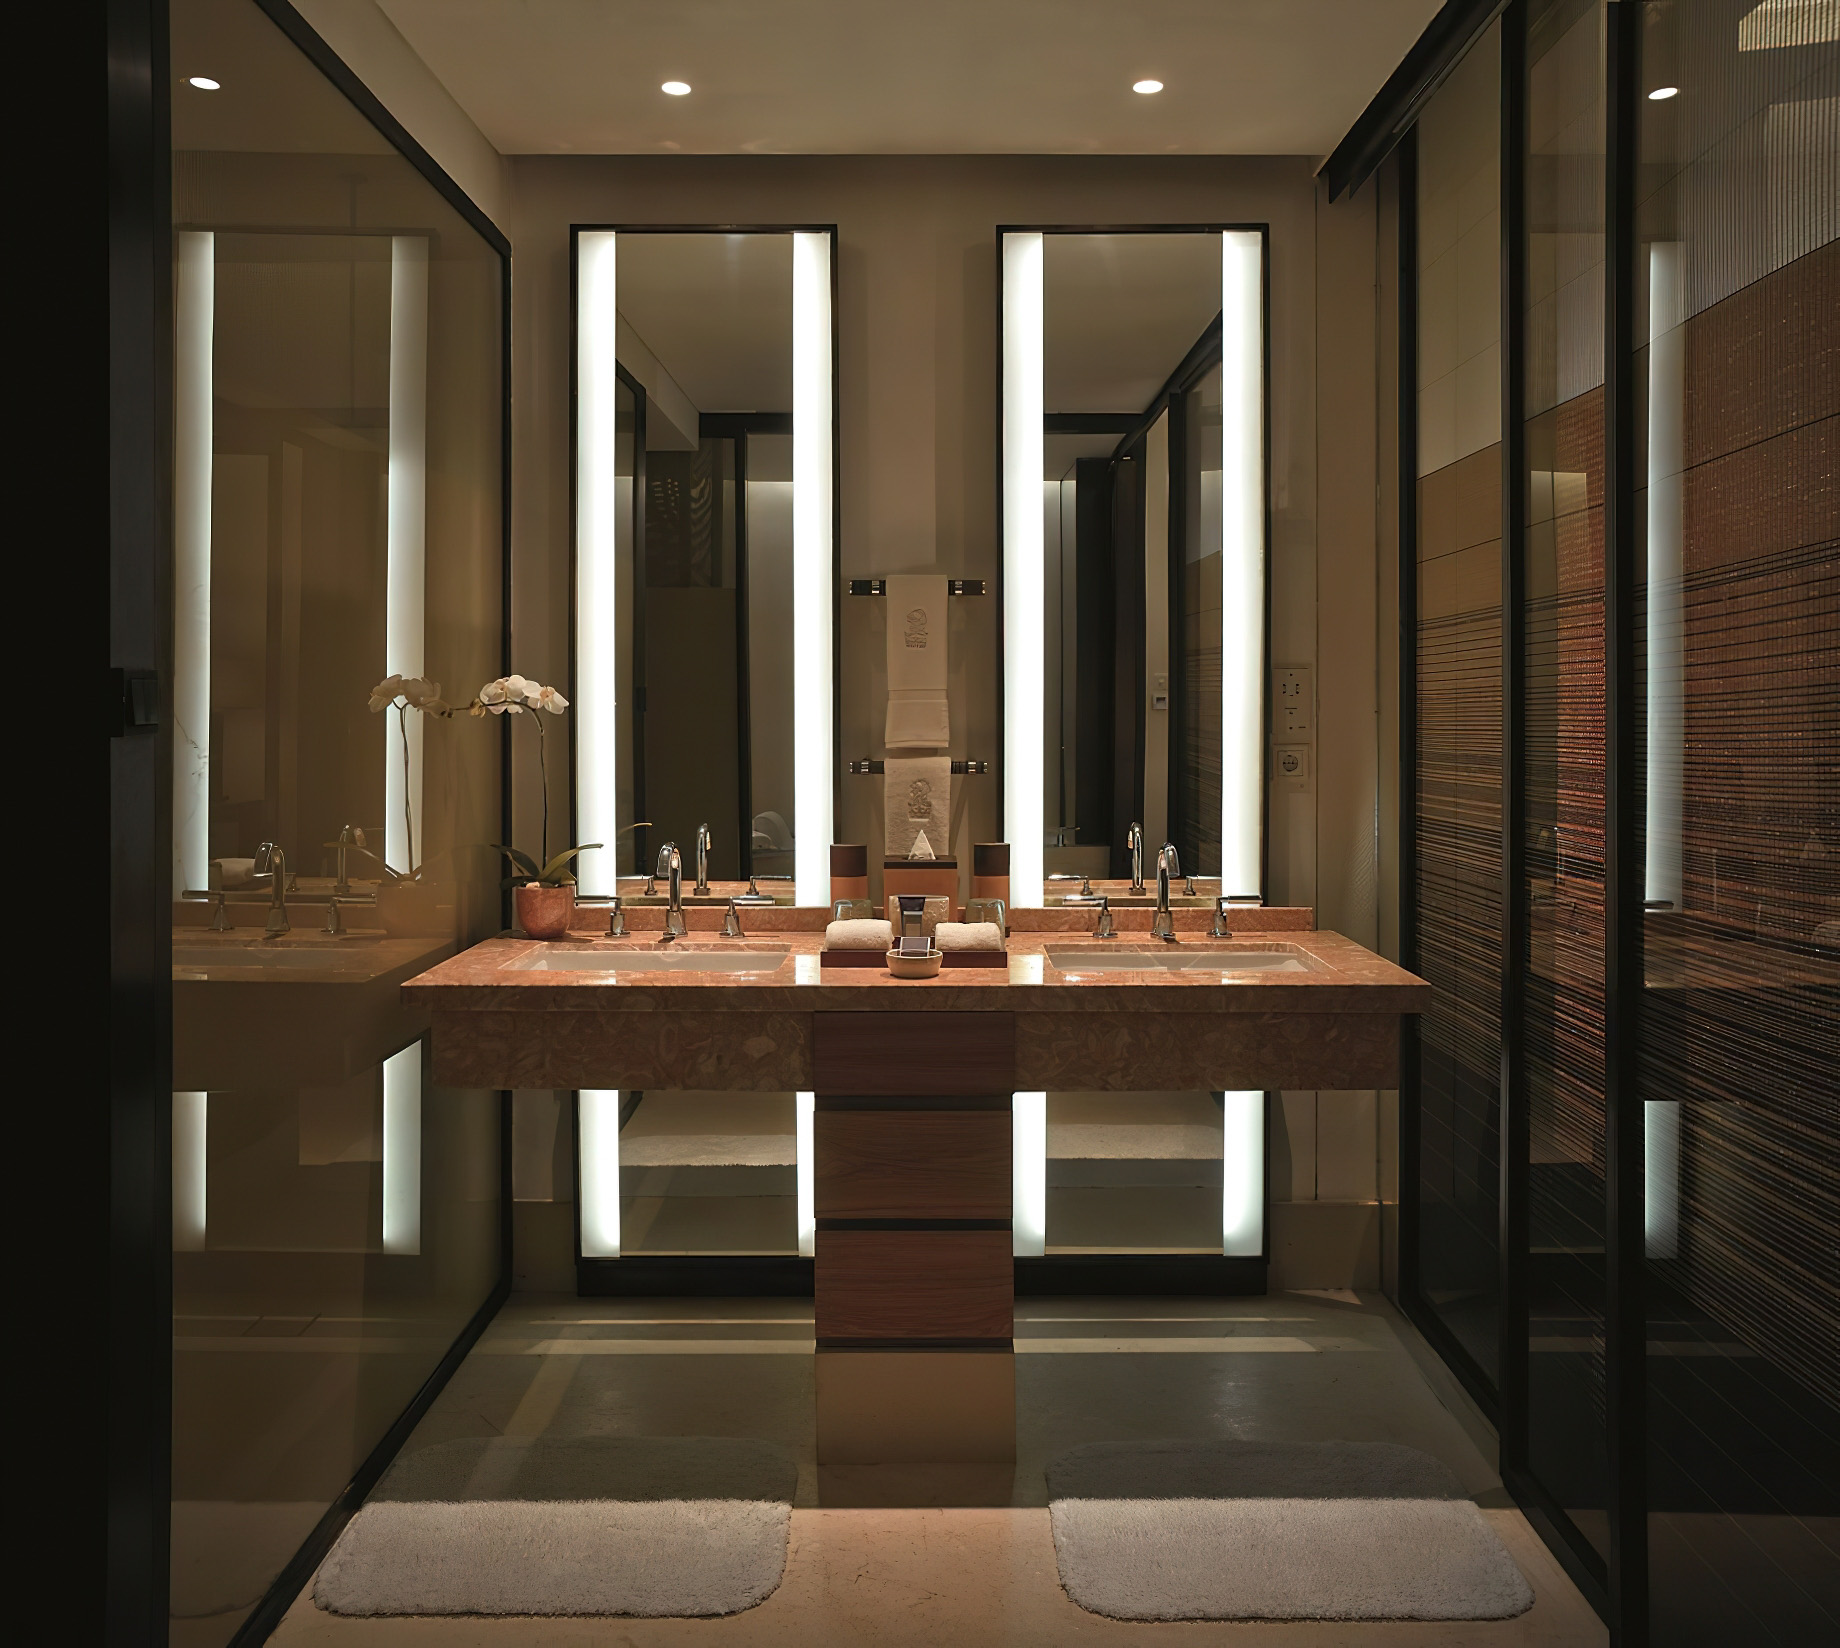 The Ritz-Carlton, Bali Nusa Dua Hotel – Bali, Indonesia – Sawangan Junior Suite Bathroom Vanity